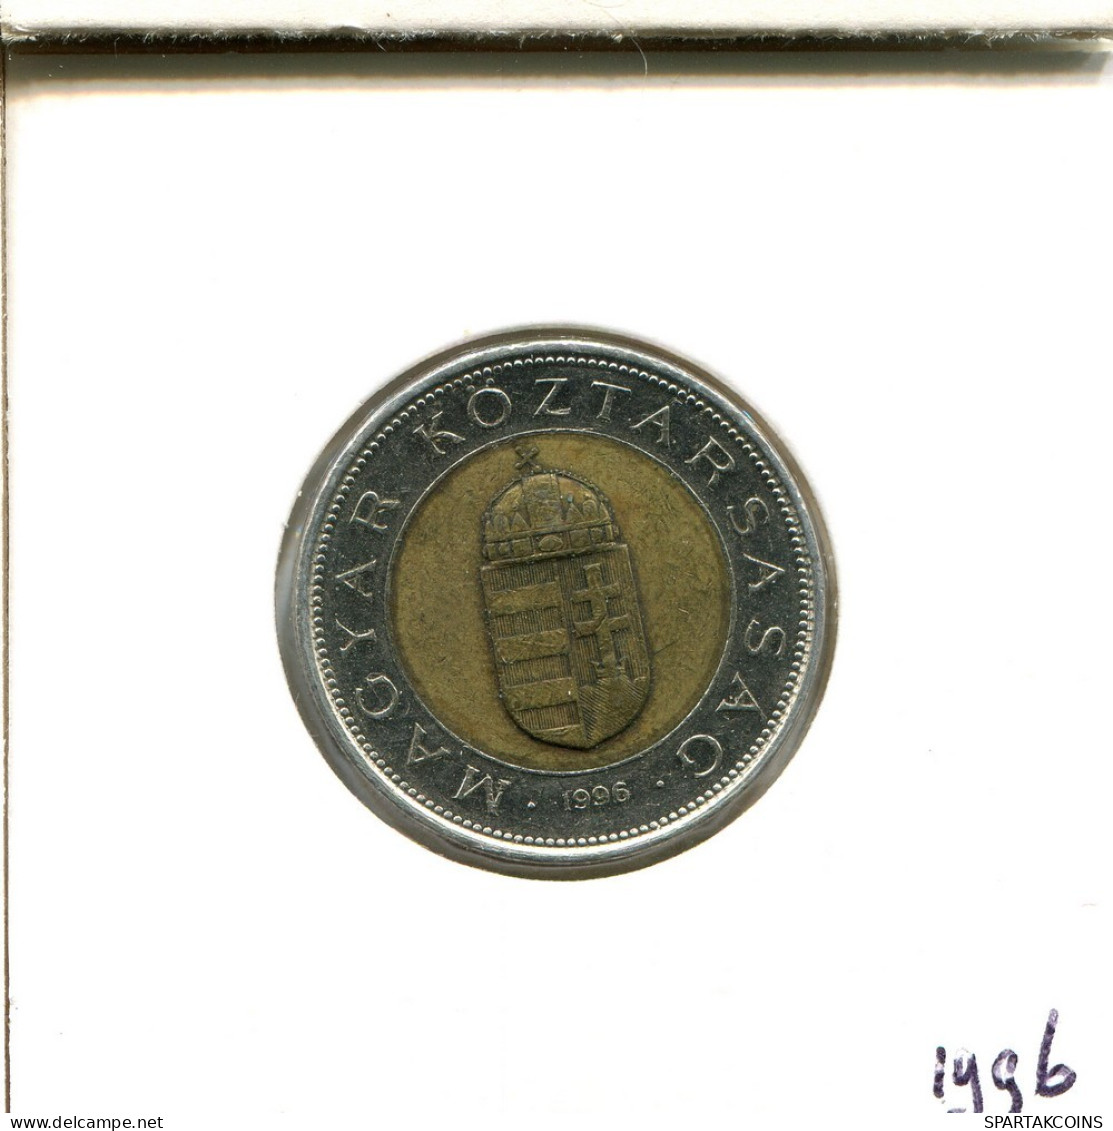 100 FORINT 1996 SIEBENBÜRGEN HUNGARY Münze BIMETALLIC #AS917.D.A - Hongarije